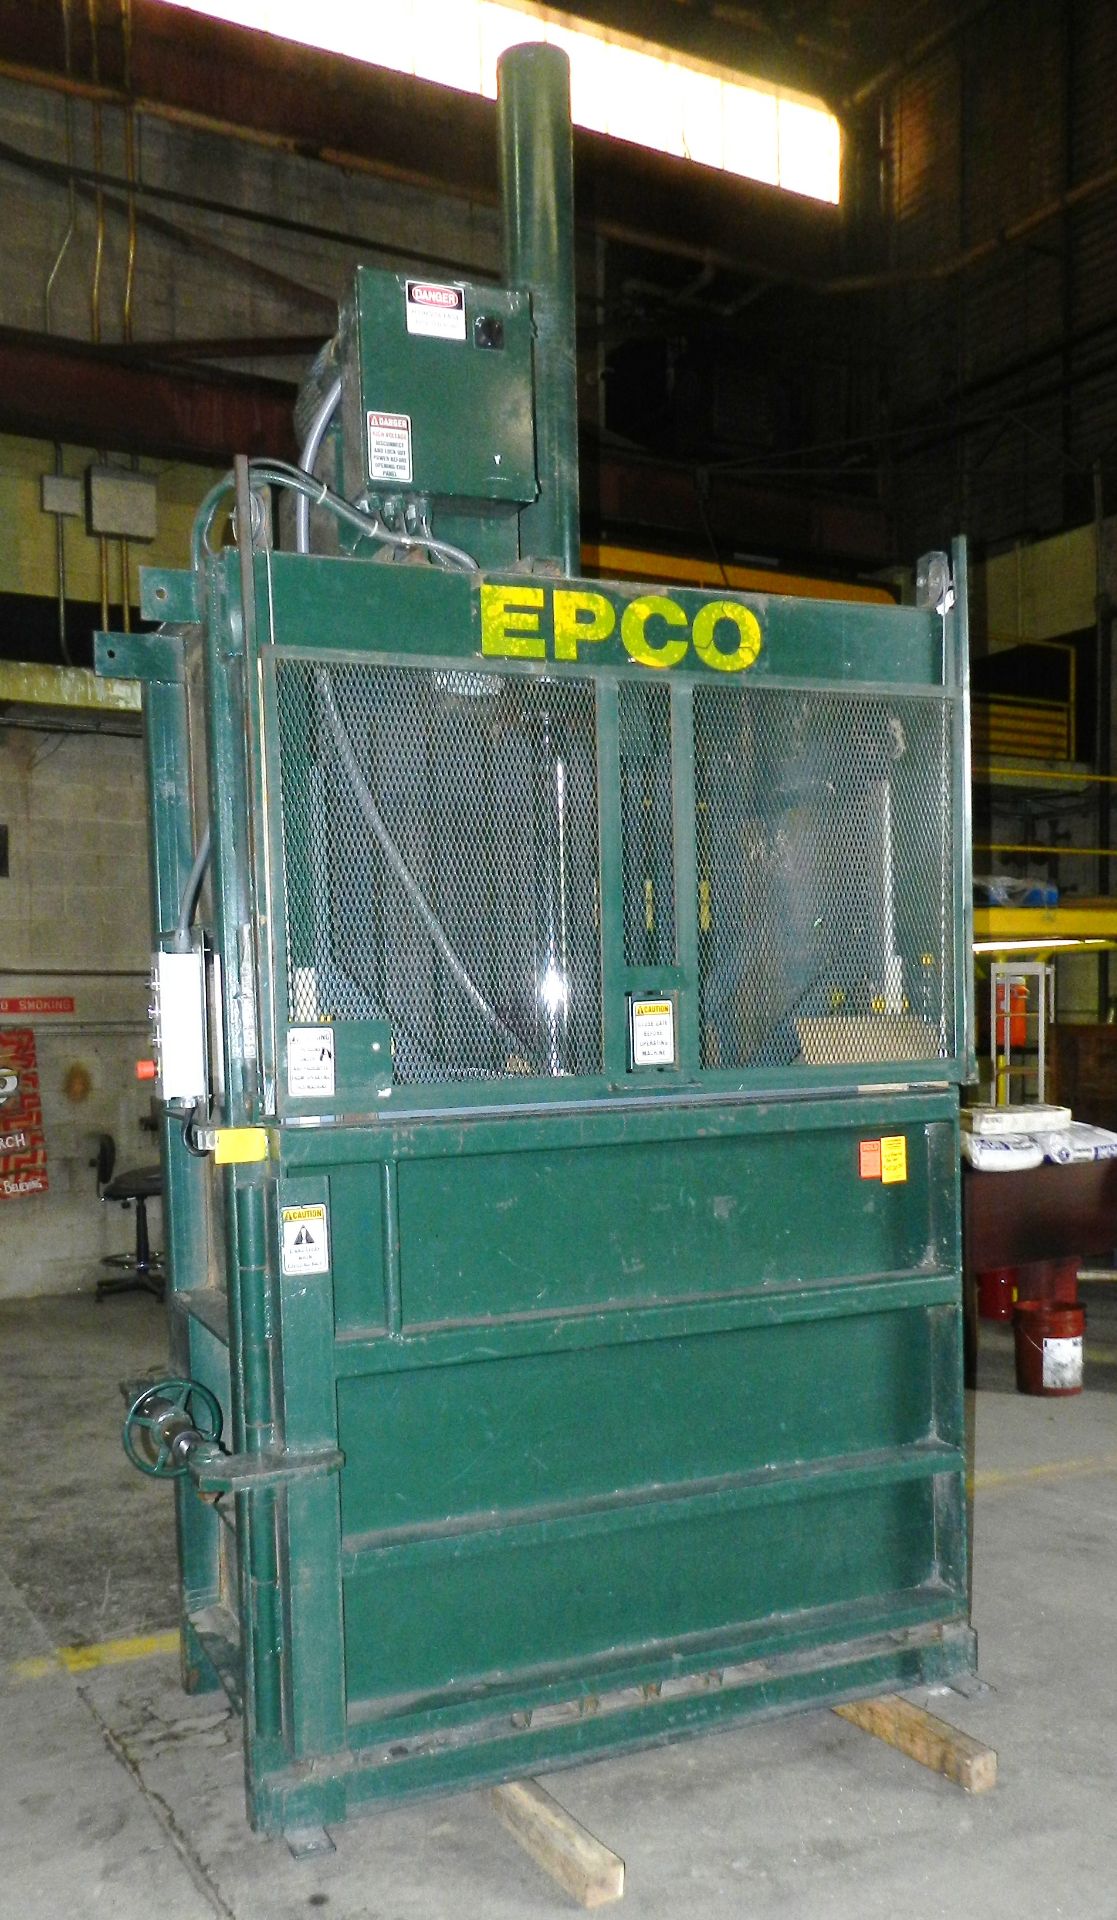 EPCO 60" Vertical Baler